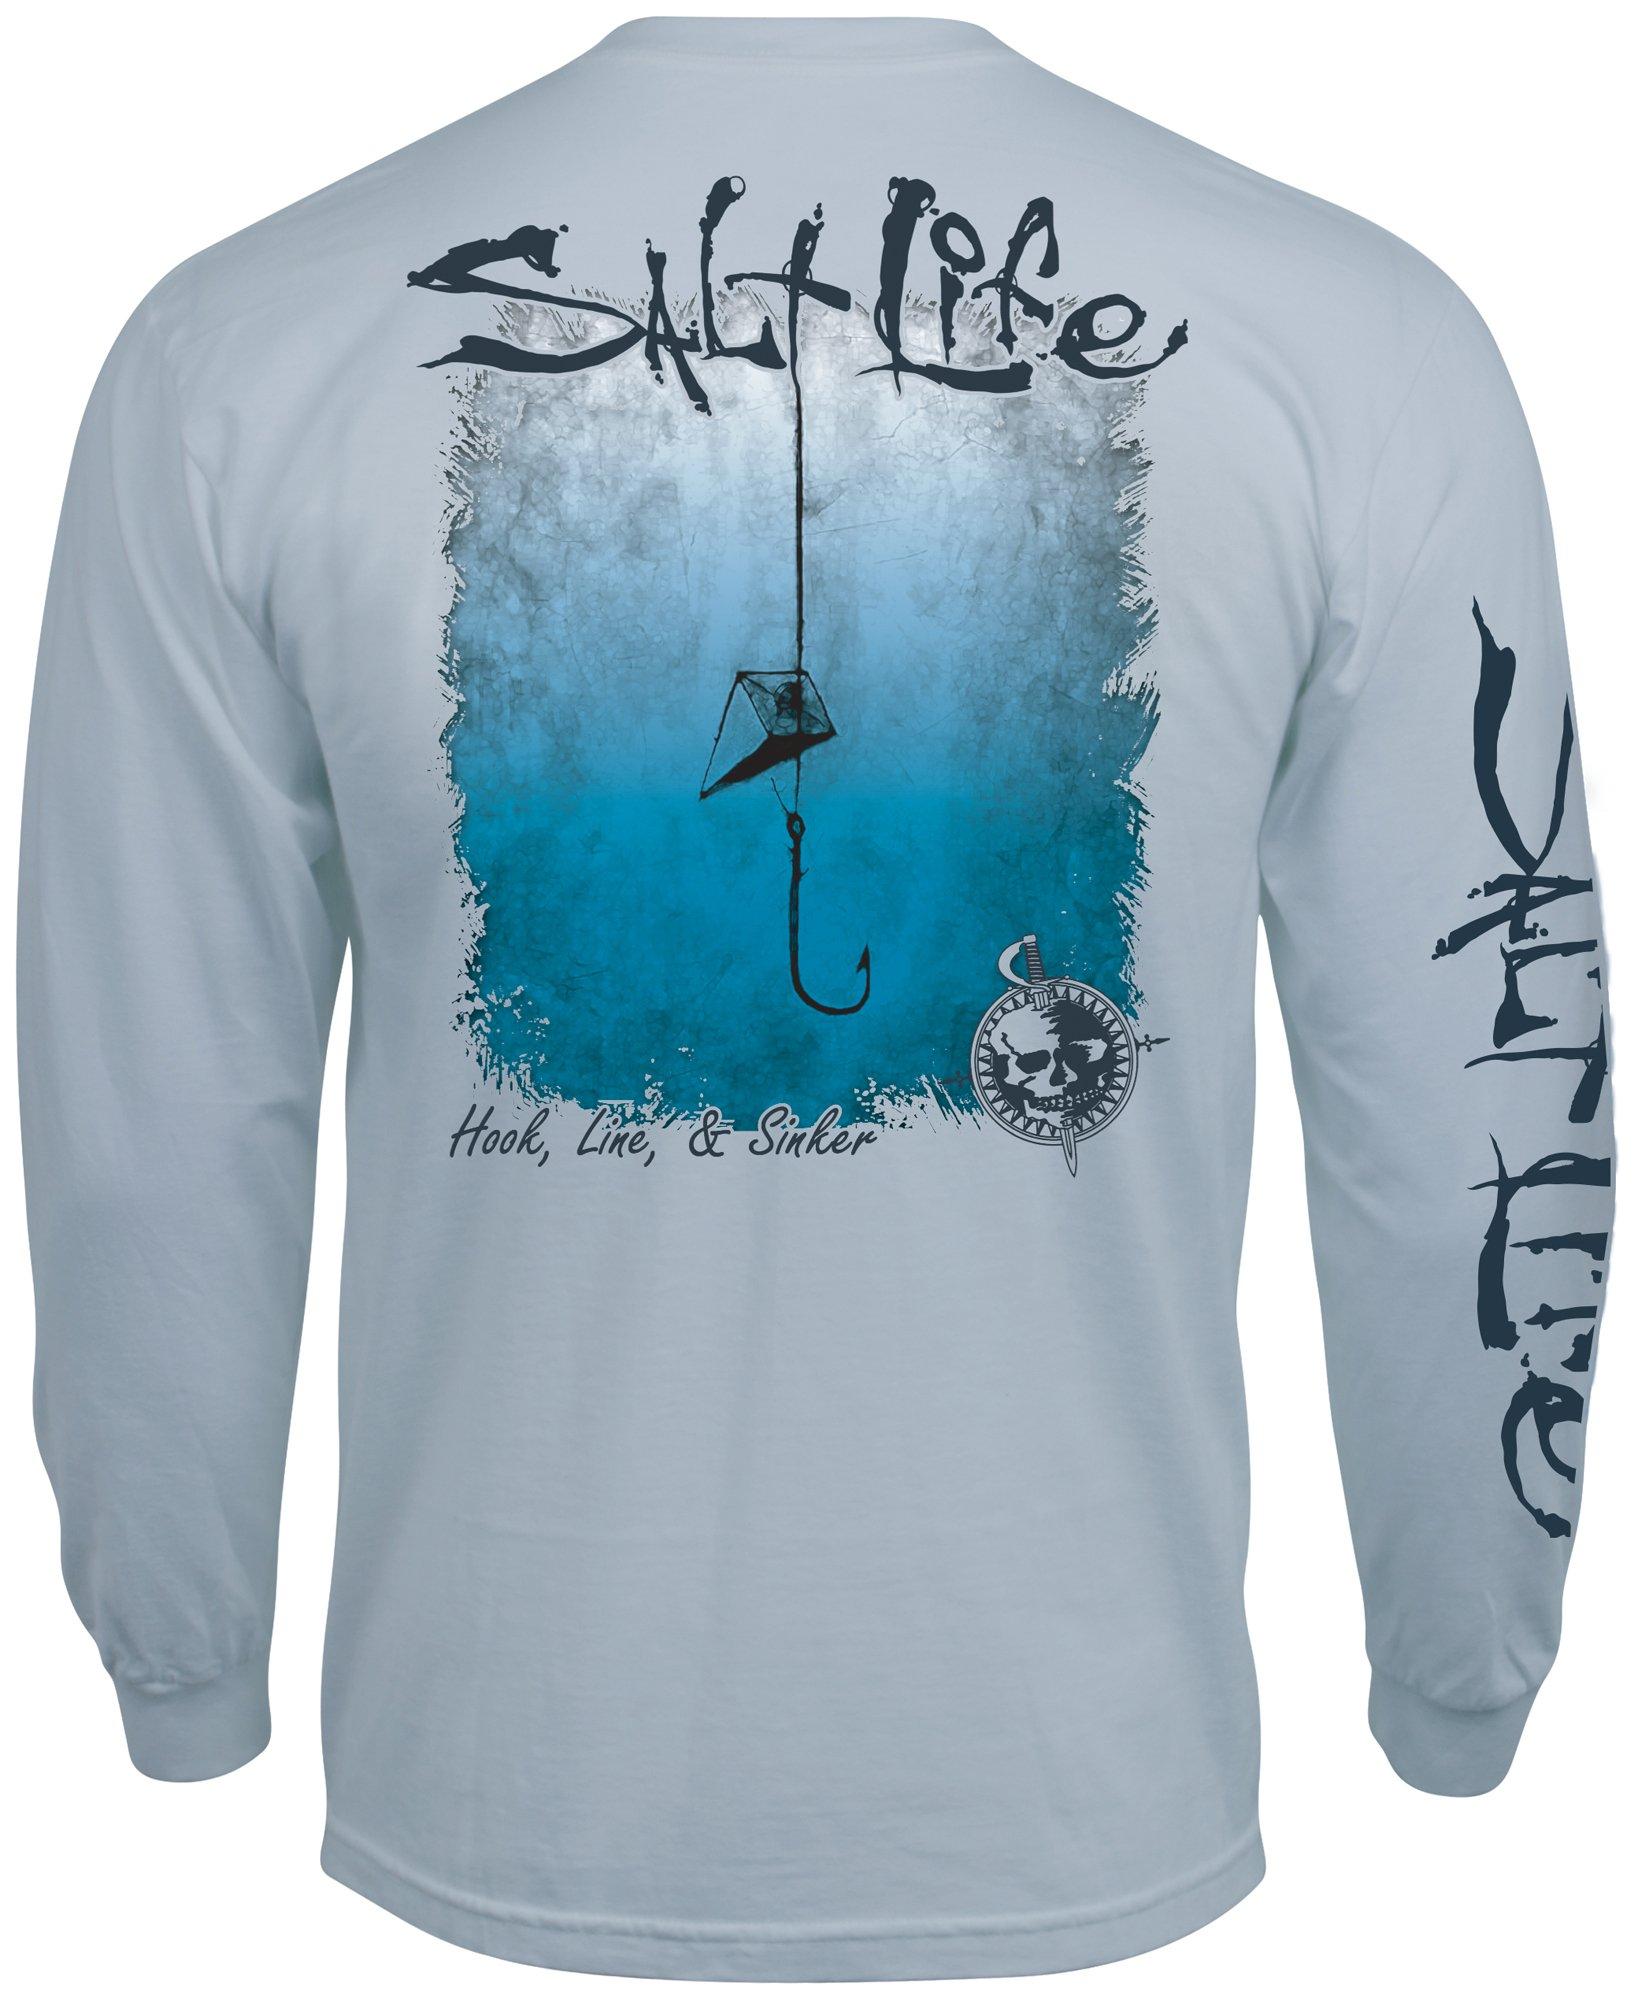 Salt Life Mens Hook, Line & Sinker Long Sleeve T-Shirt